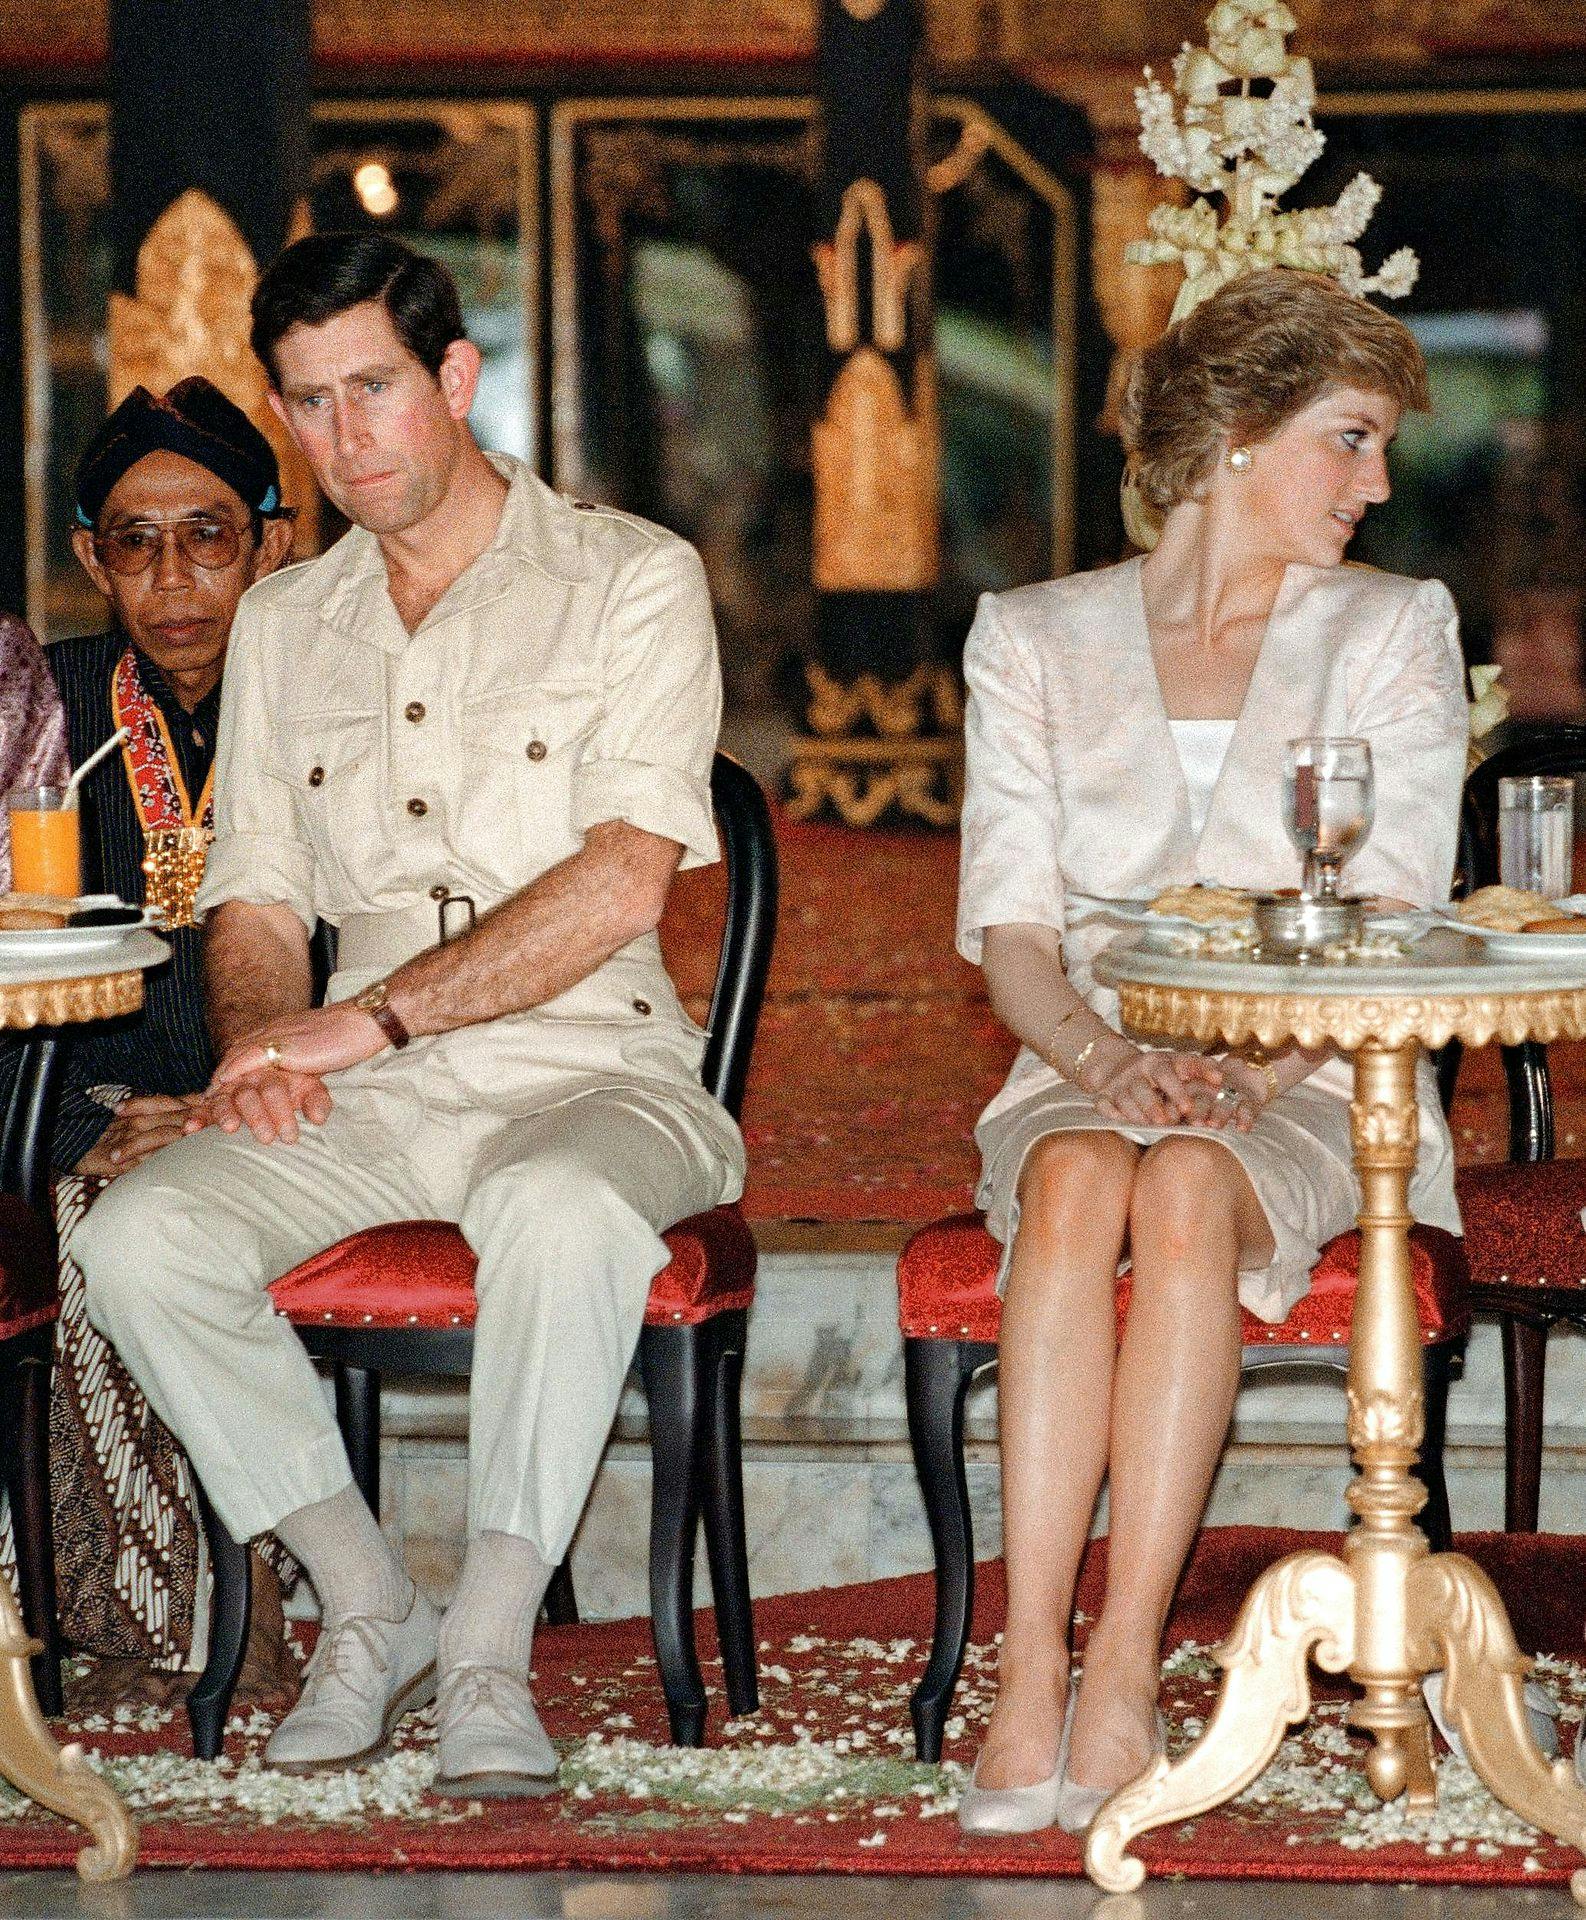 I november 1989 var stemningen mellem prinsesse Diana og prins Charles iskold. Det var også samme år, hvor det famøse tampon-interview fandt sted.&nbsp;
